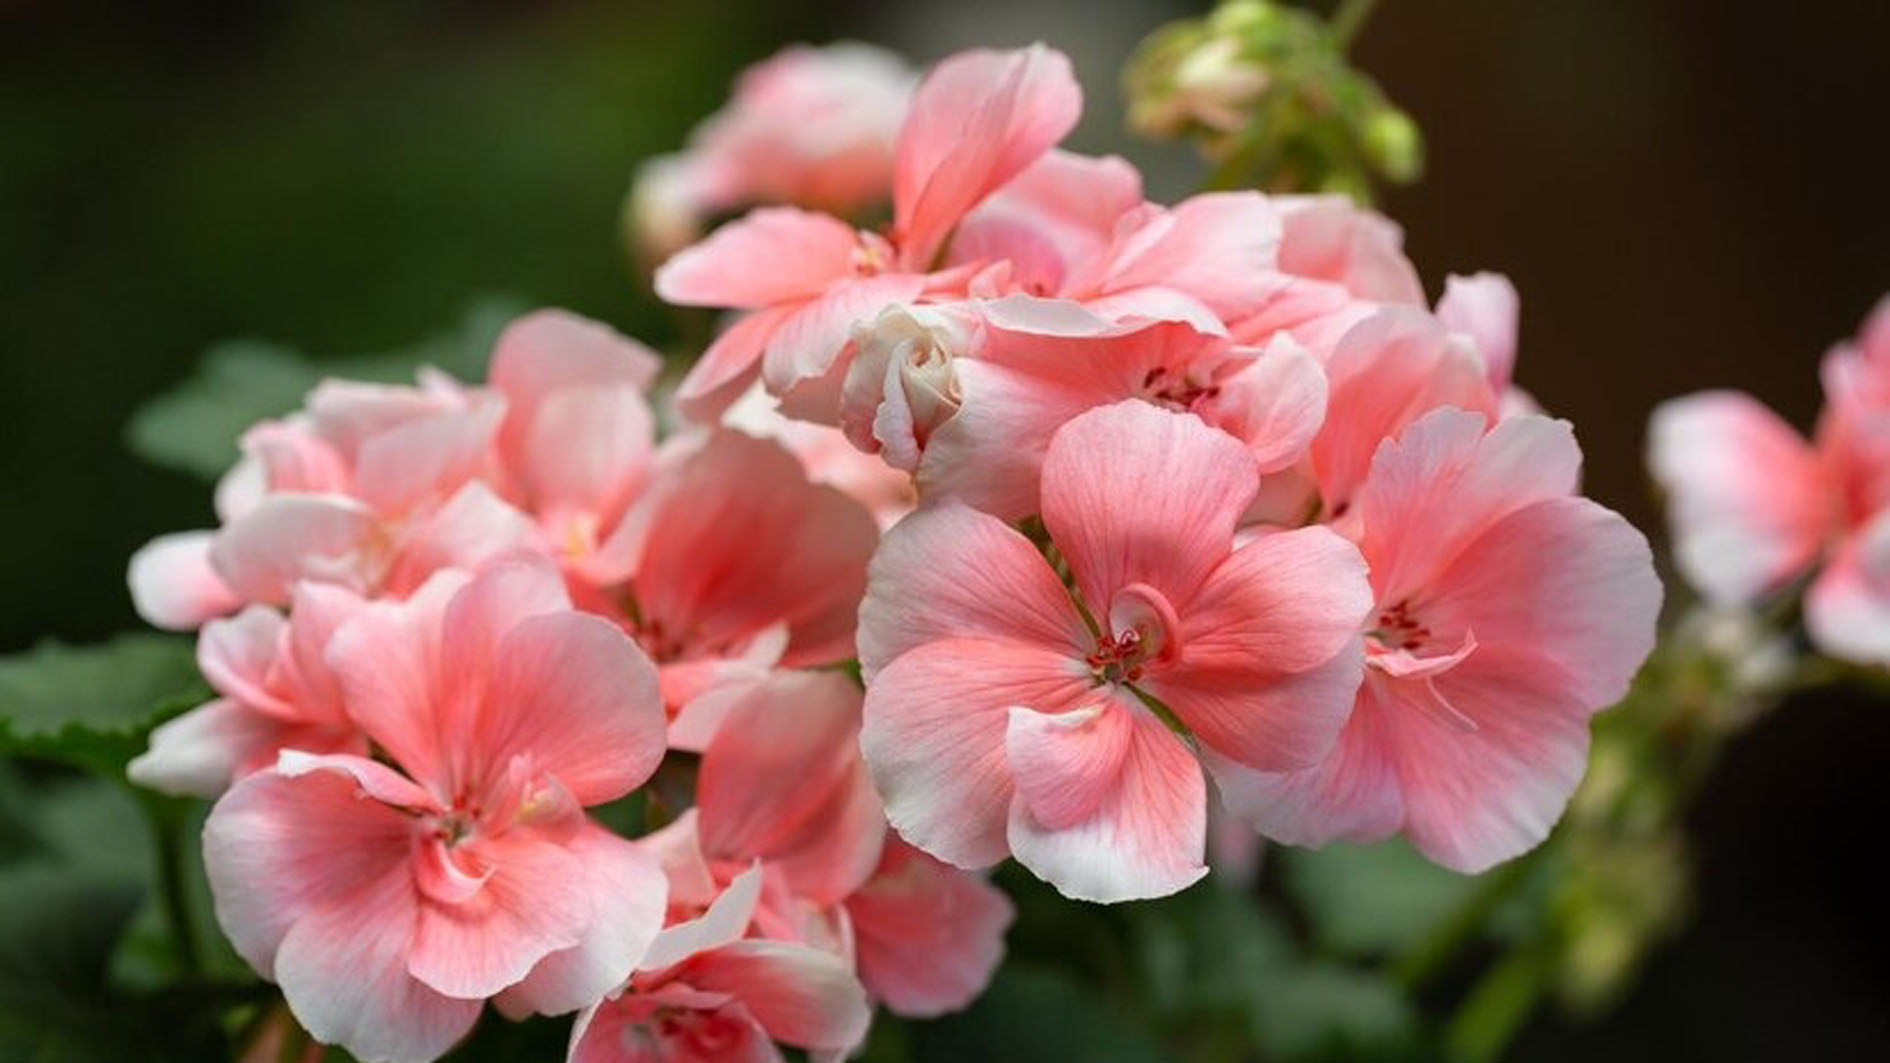 Inilah 6 Jenis Tanaman Hias Geranium, Bunga Cantik yang Banyak Manfaatnya